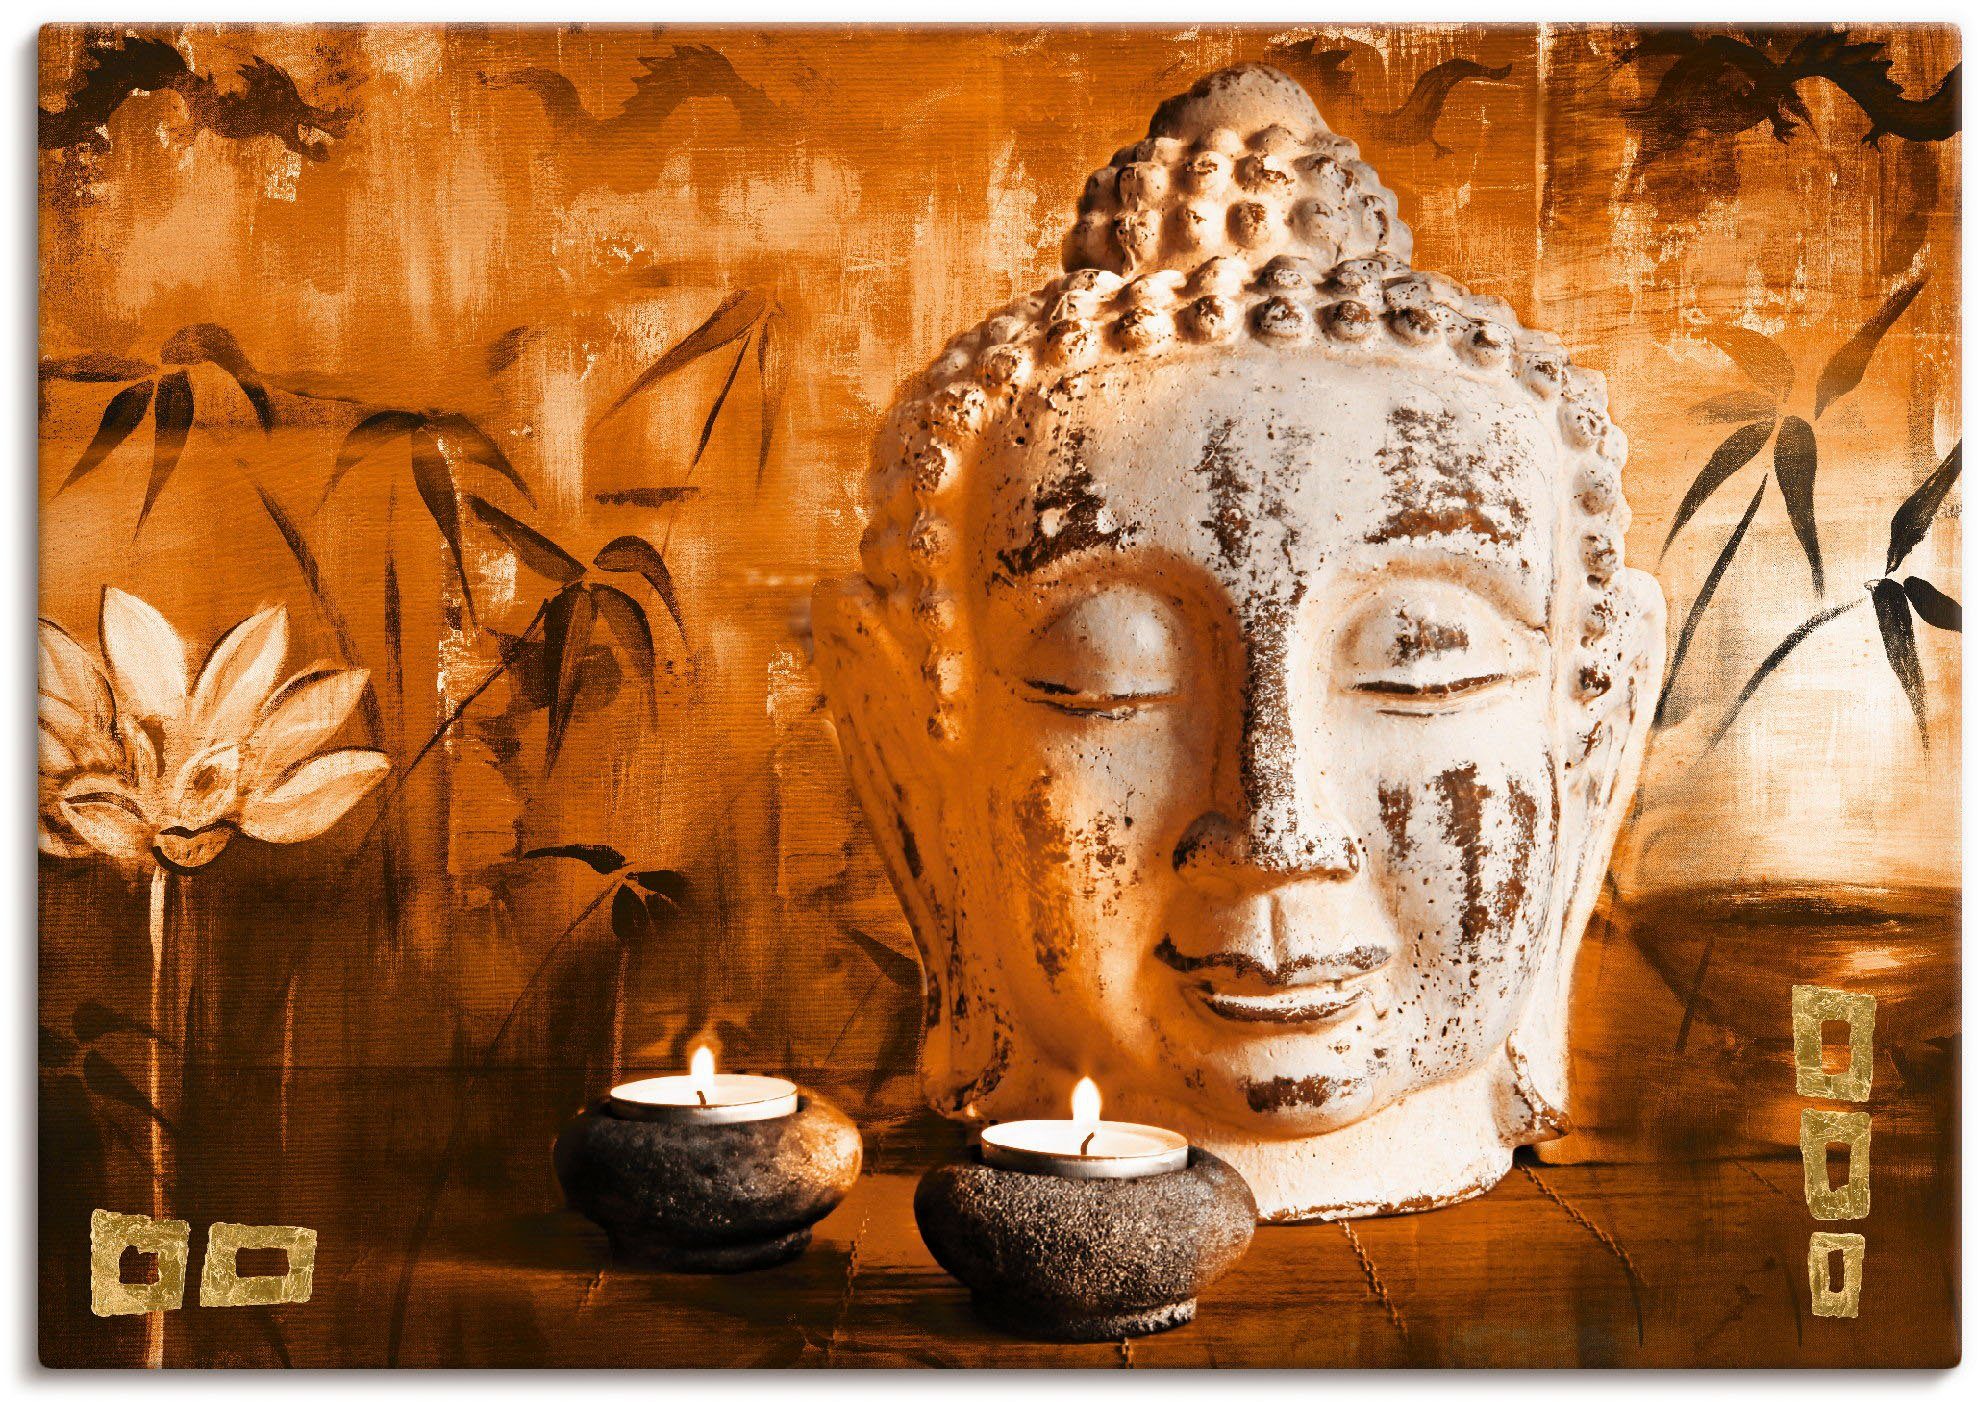 Artland Artprint Boeddha met kaarsen in vele afmetingen & productsoorten -artprint op linnen, poster, muursticker / wandfolie ook geschikt voor de badkamer (1 stuk)